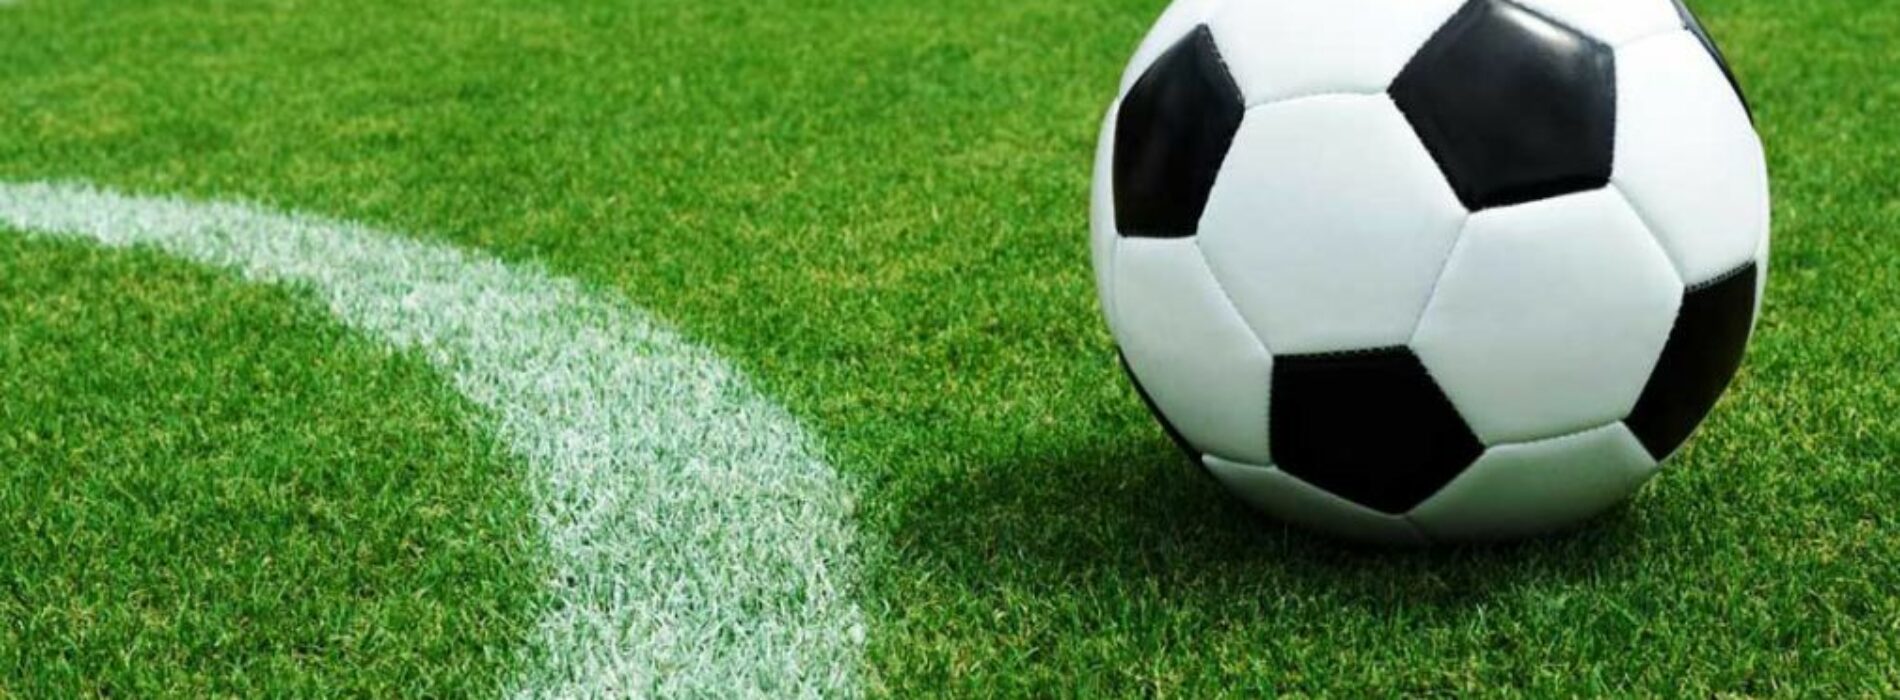 Transformacja piłki nożnej: wpływ technologii i analityki na współczesną grę